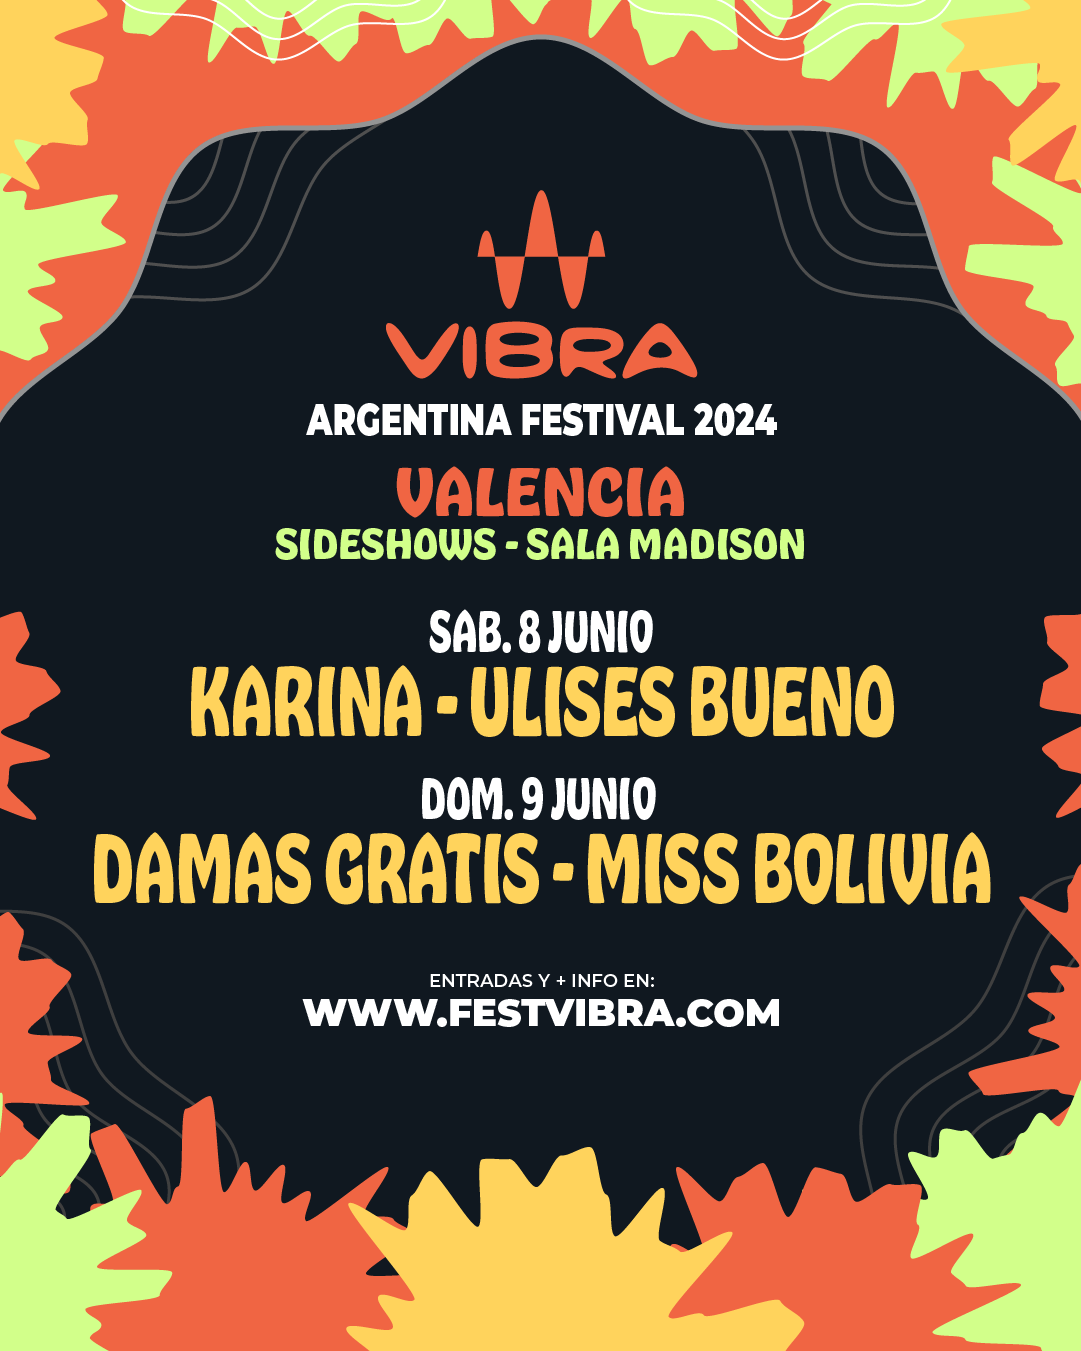 VIBRA ARGENTINA FESTIVAL 2024 en ALICANTE, sala Madison, Sabado 8 Junio Karina y Ulises Bueno, Domingo 9 de Junio Damas Gratis y Miss Bolivia. Entradas y Info: www.festvibra.com